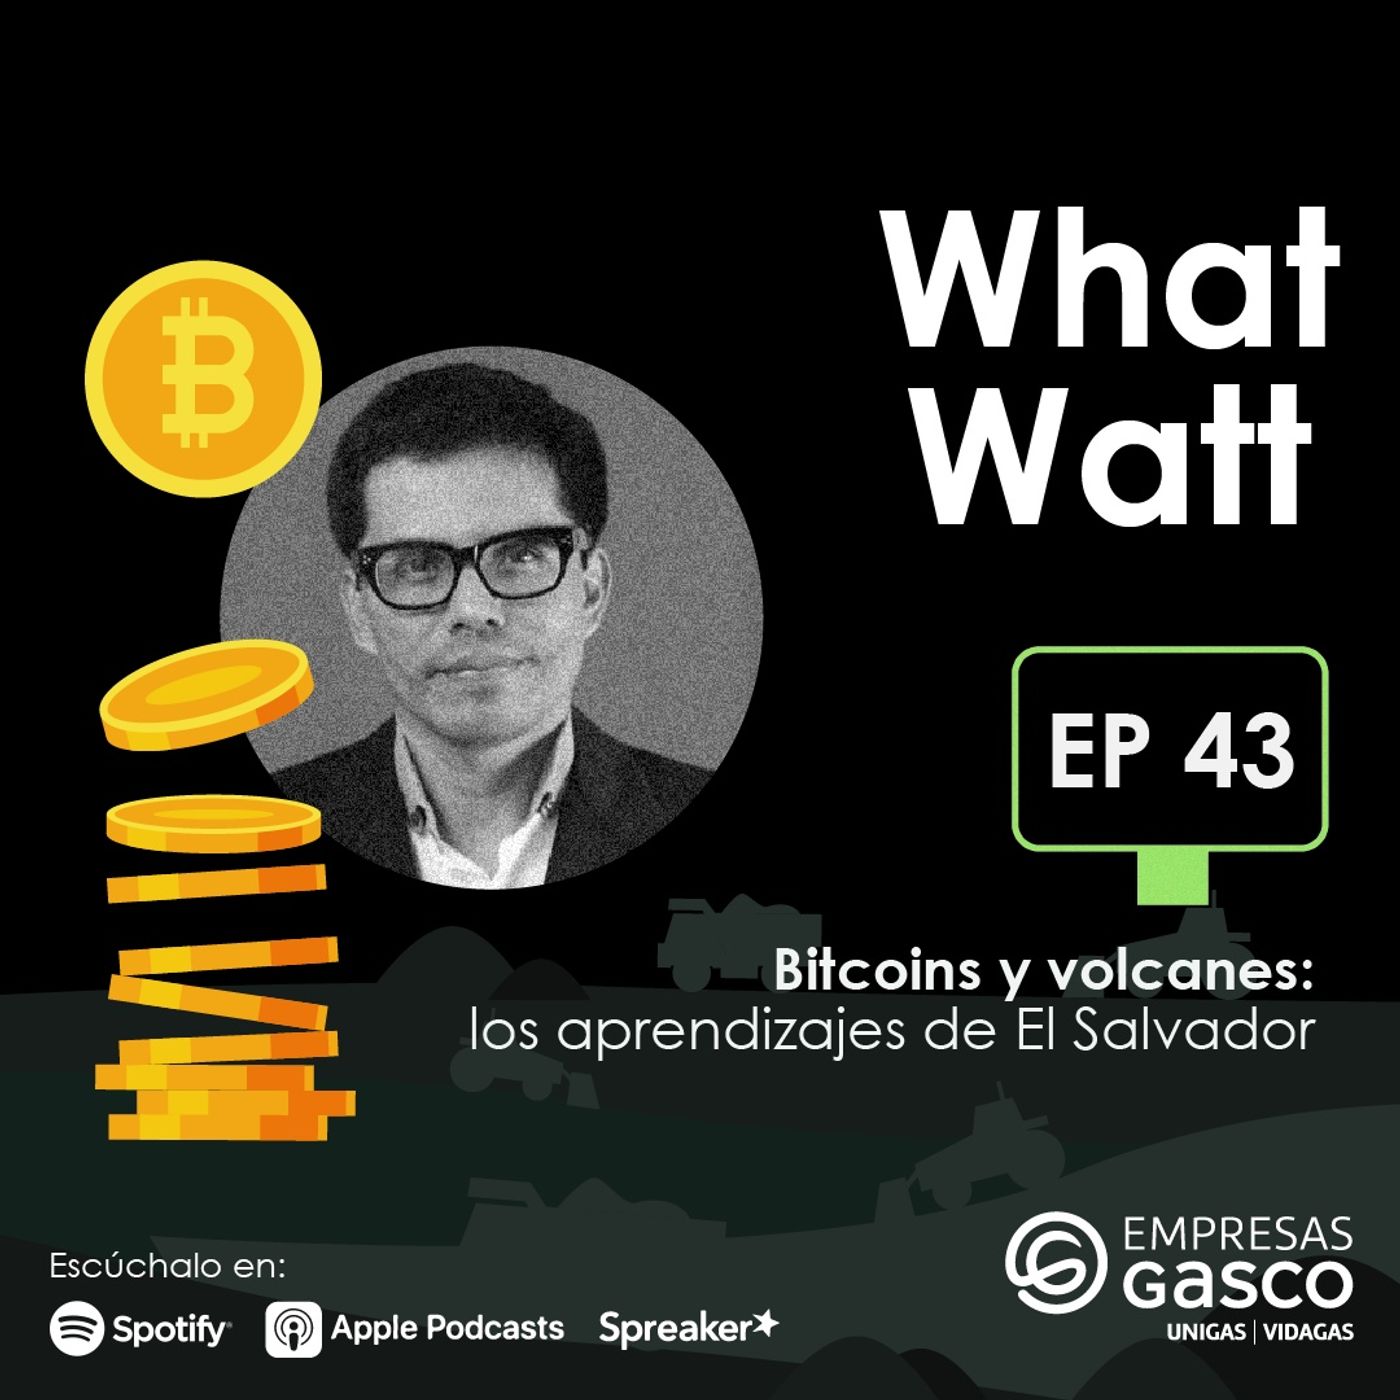 EP. 43: Bitcoins y volcanes: los aprendizajes de El Salvador